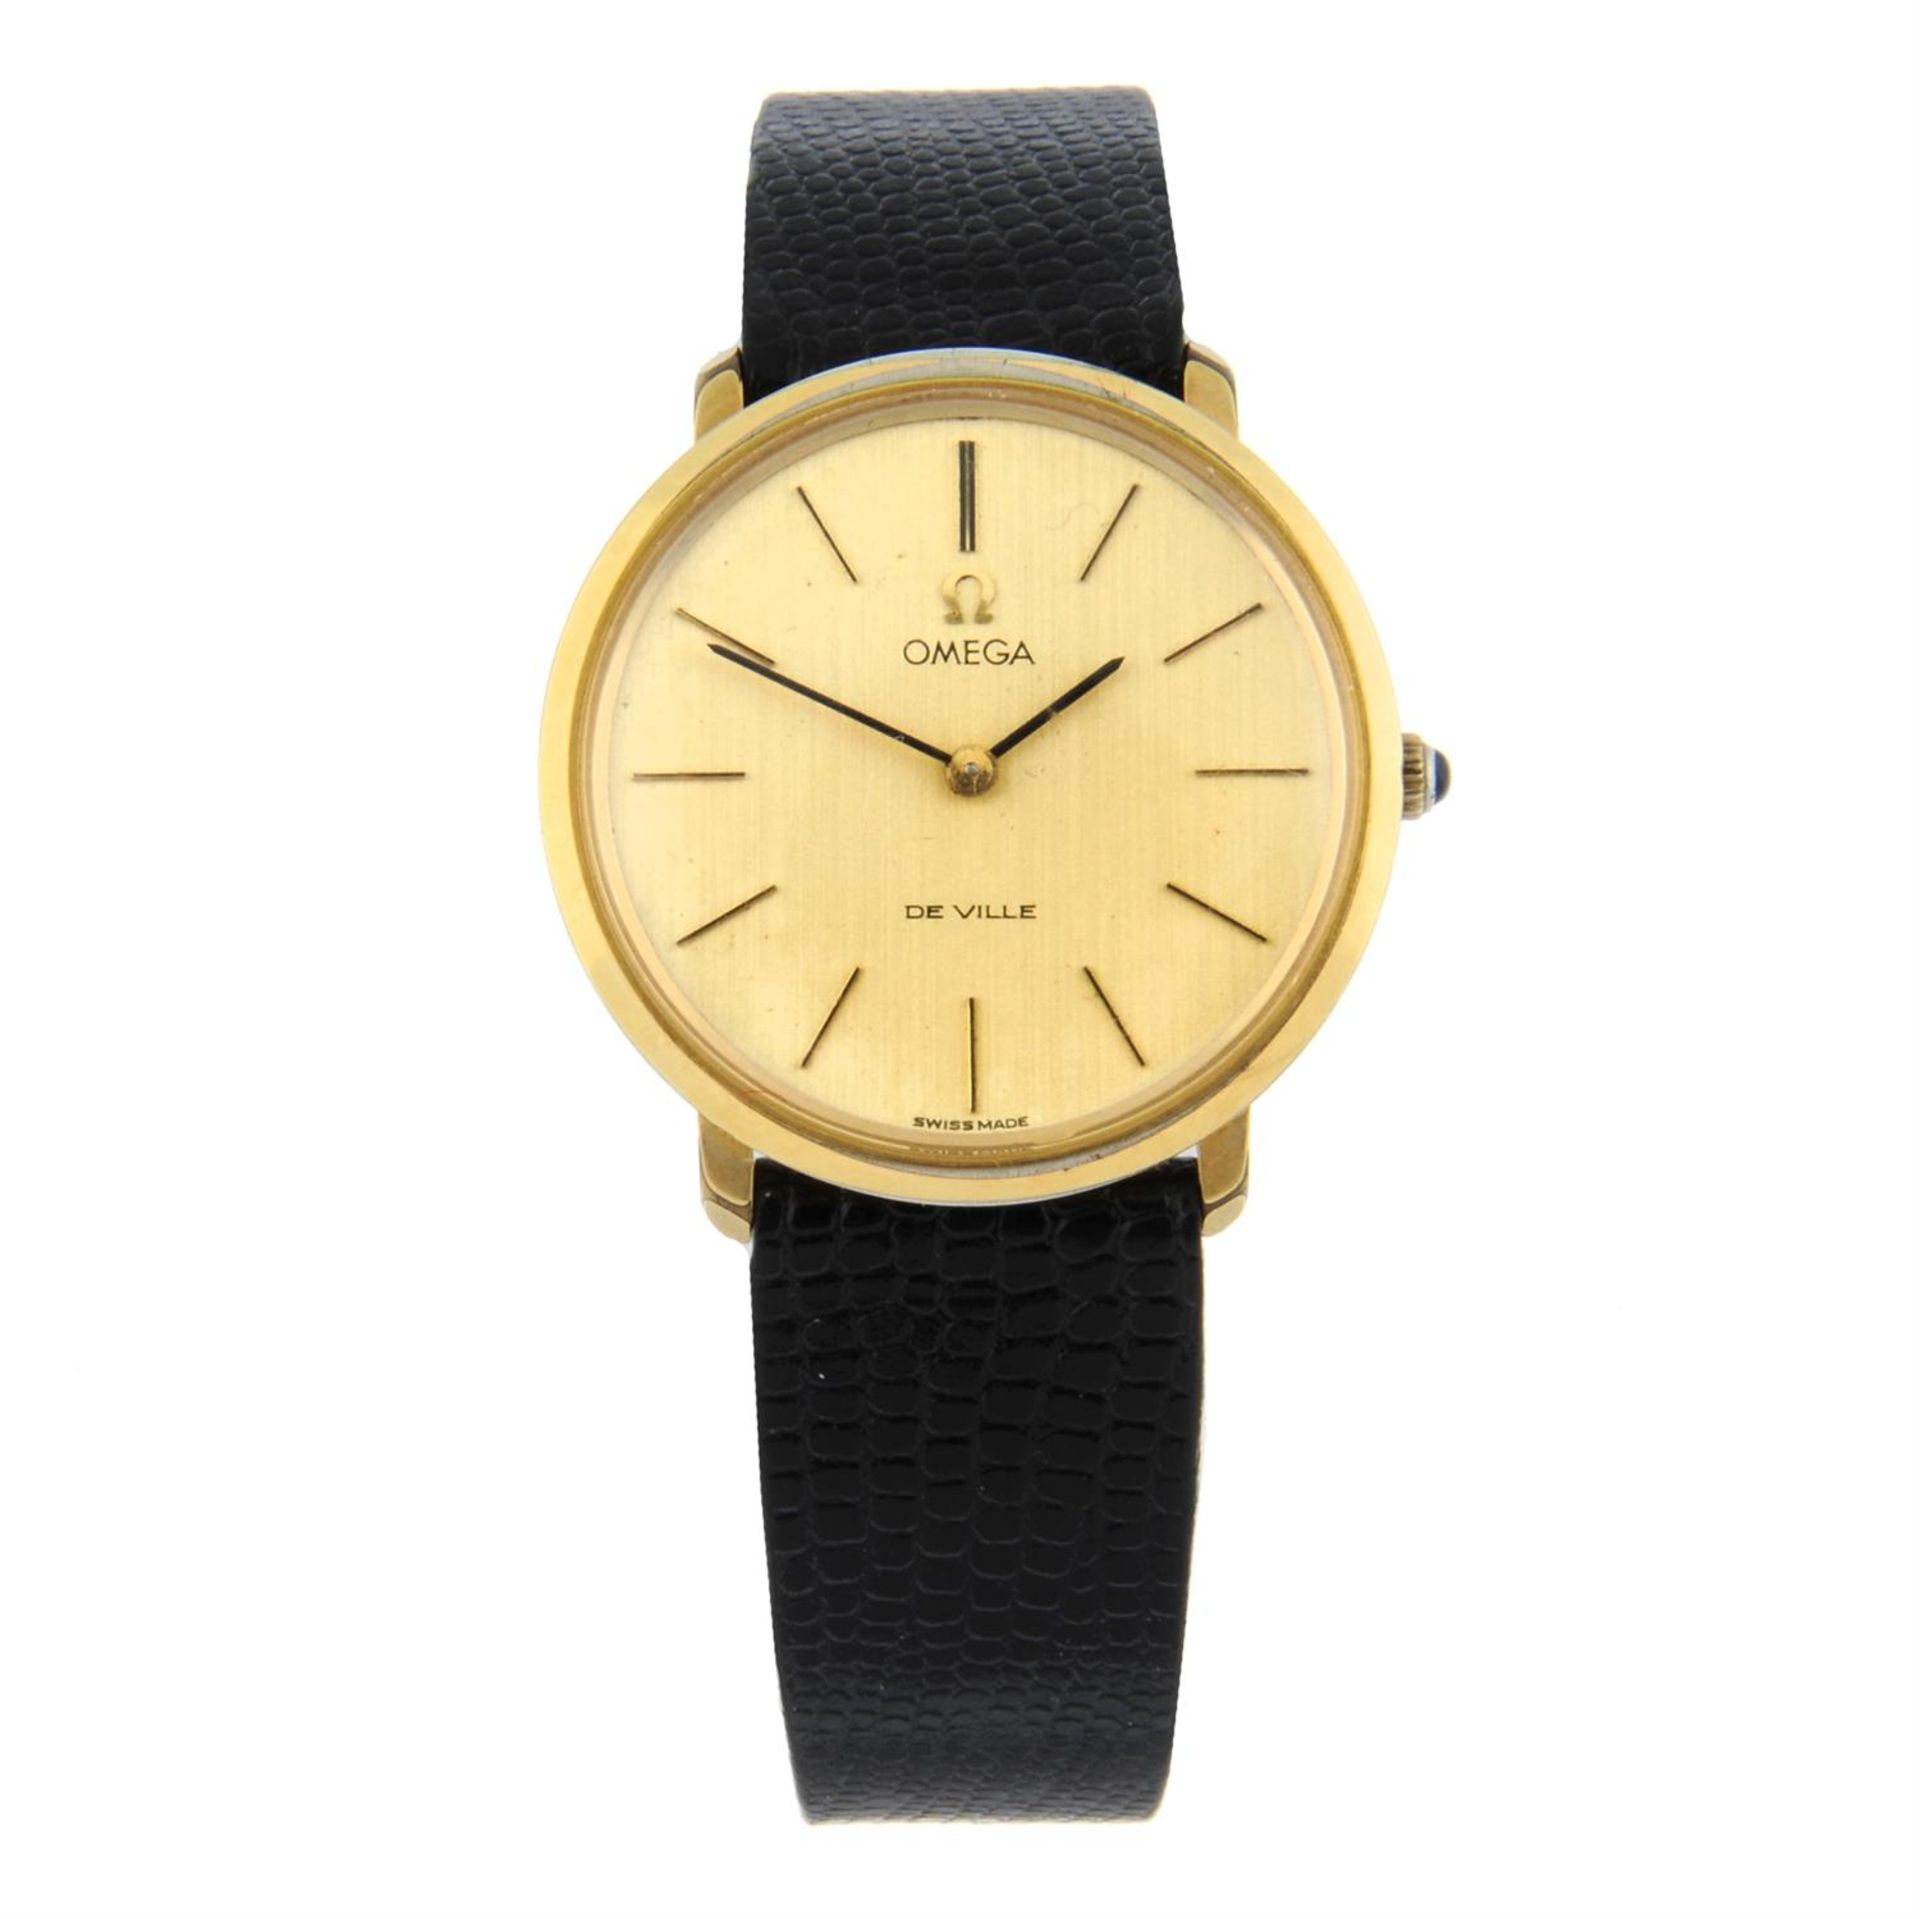 OMEGA - a gold plated De Ville wrist watch, 33mm.